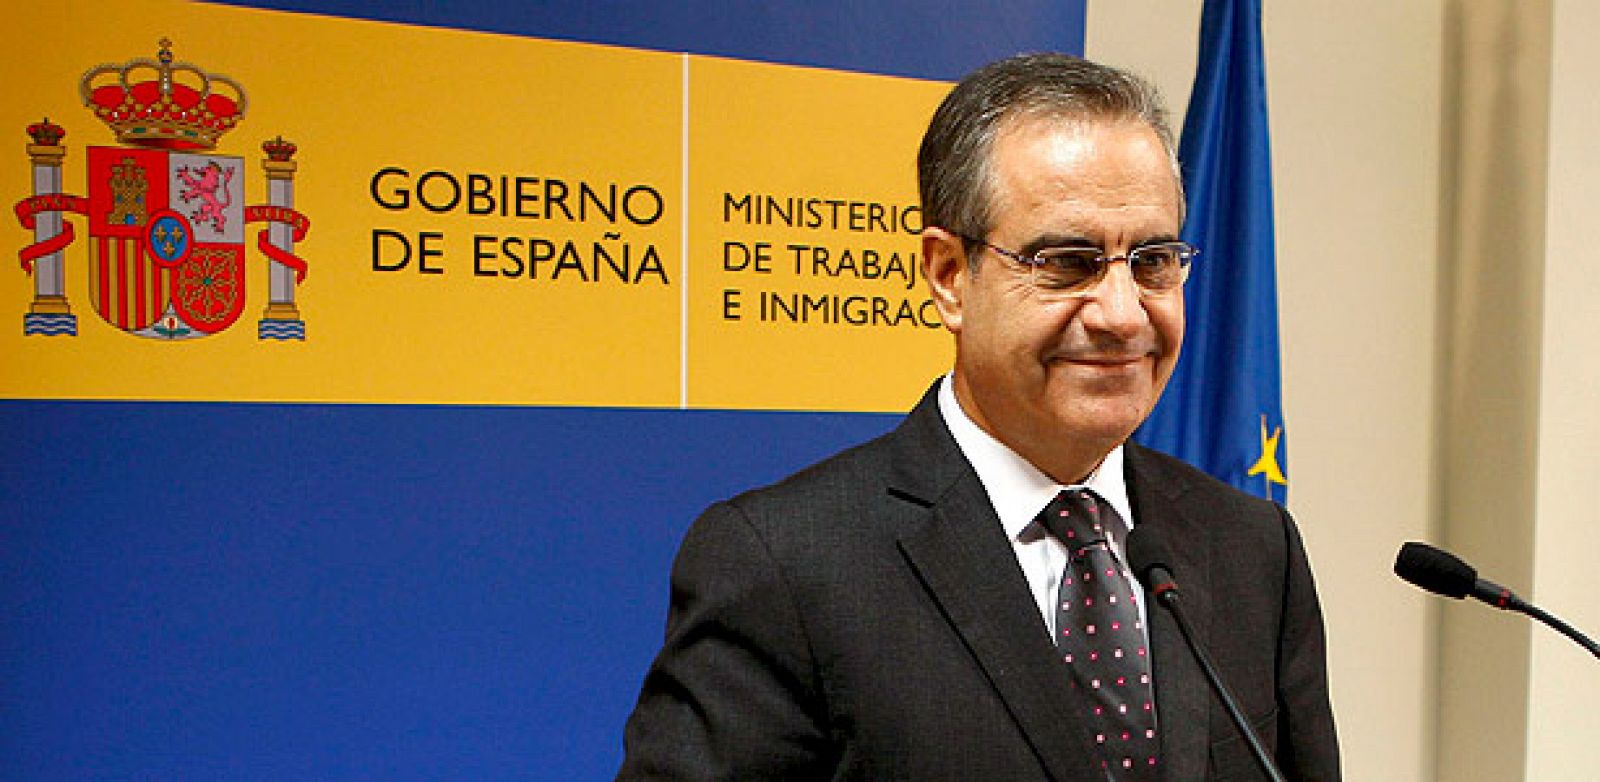 El ministro de Trabajo e Inmigración, Celestino Corbacho, en una imagen de archivo.